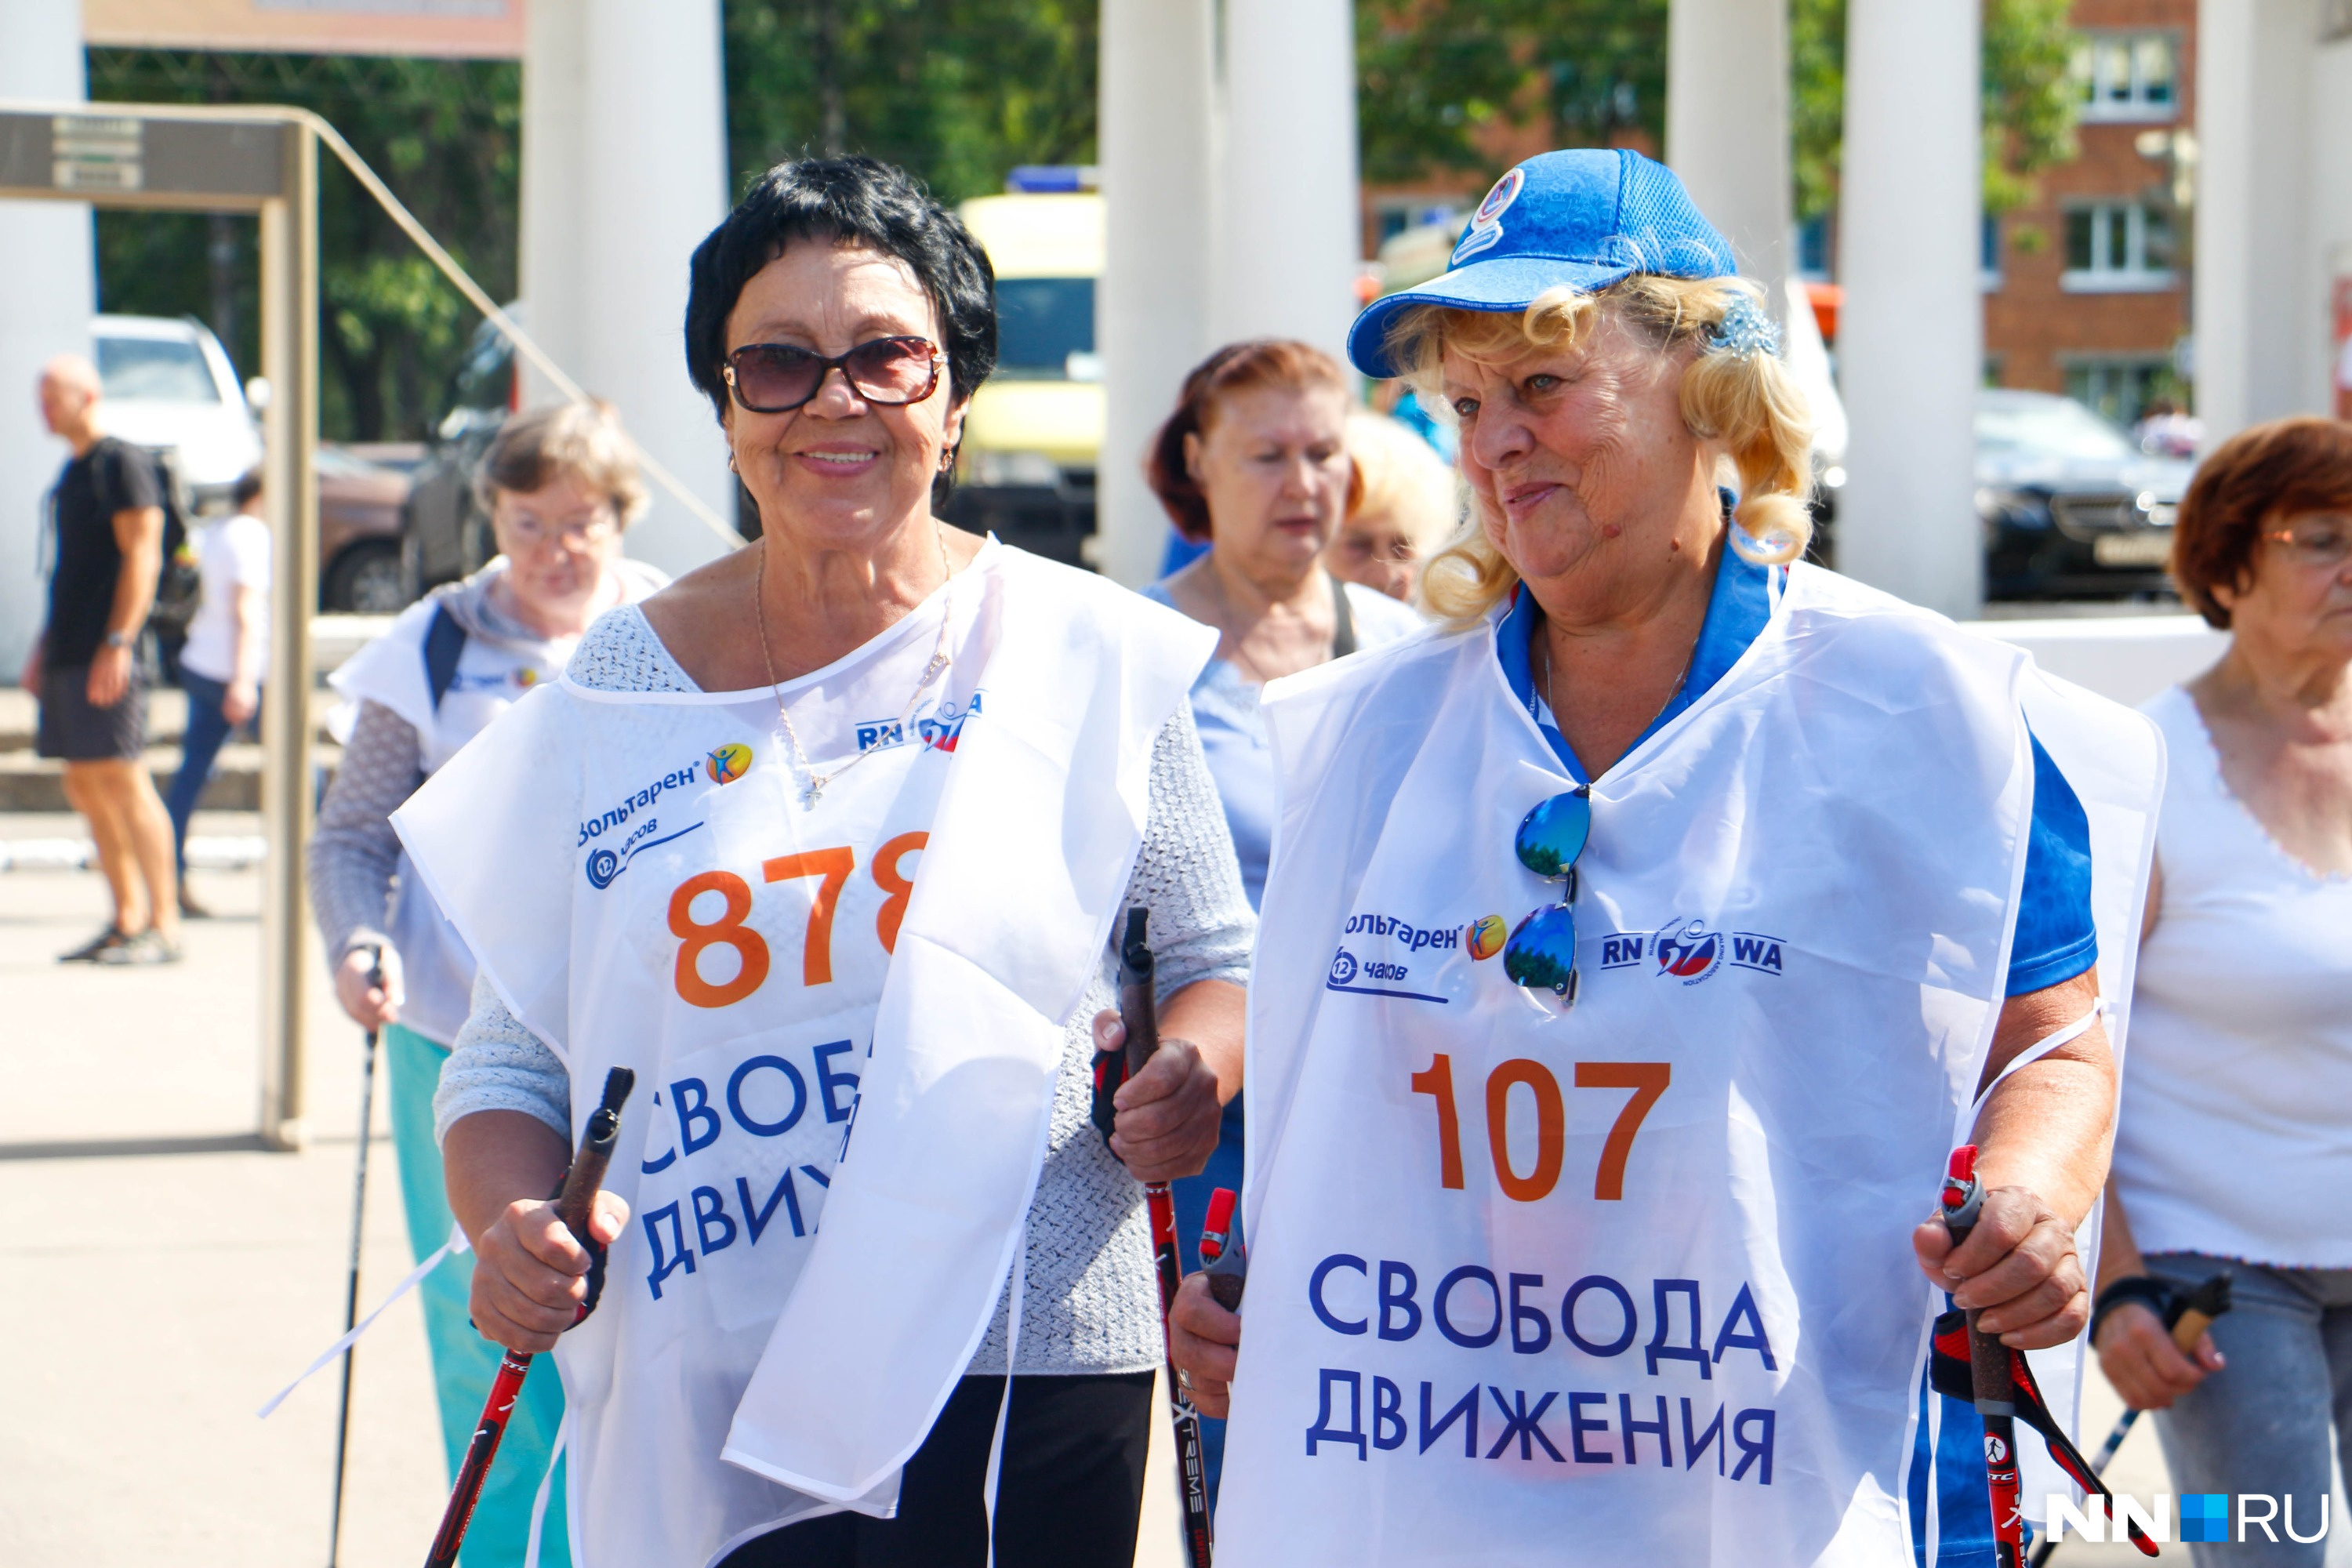 Татьяна Ворошкова (справа) на фестиваль пришла не одна, а с группой поддержки из шести человек<br>